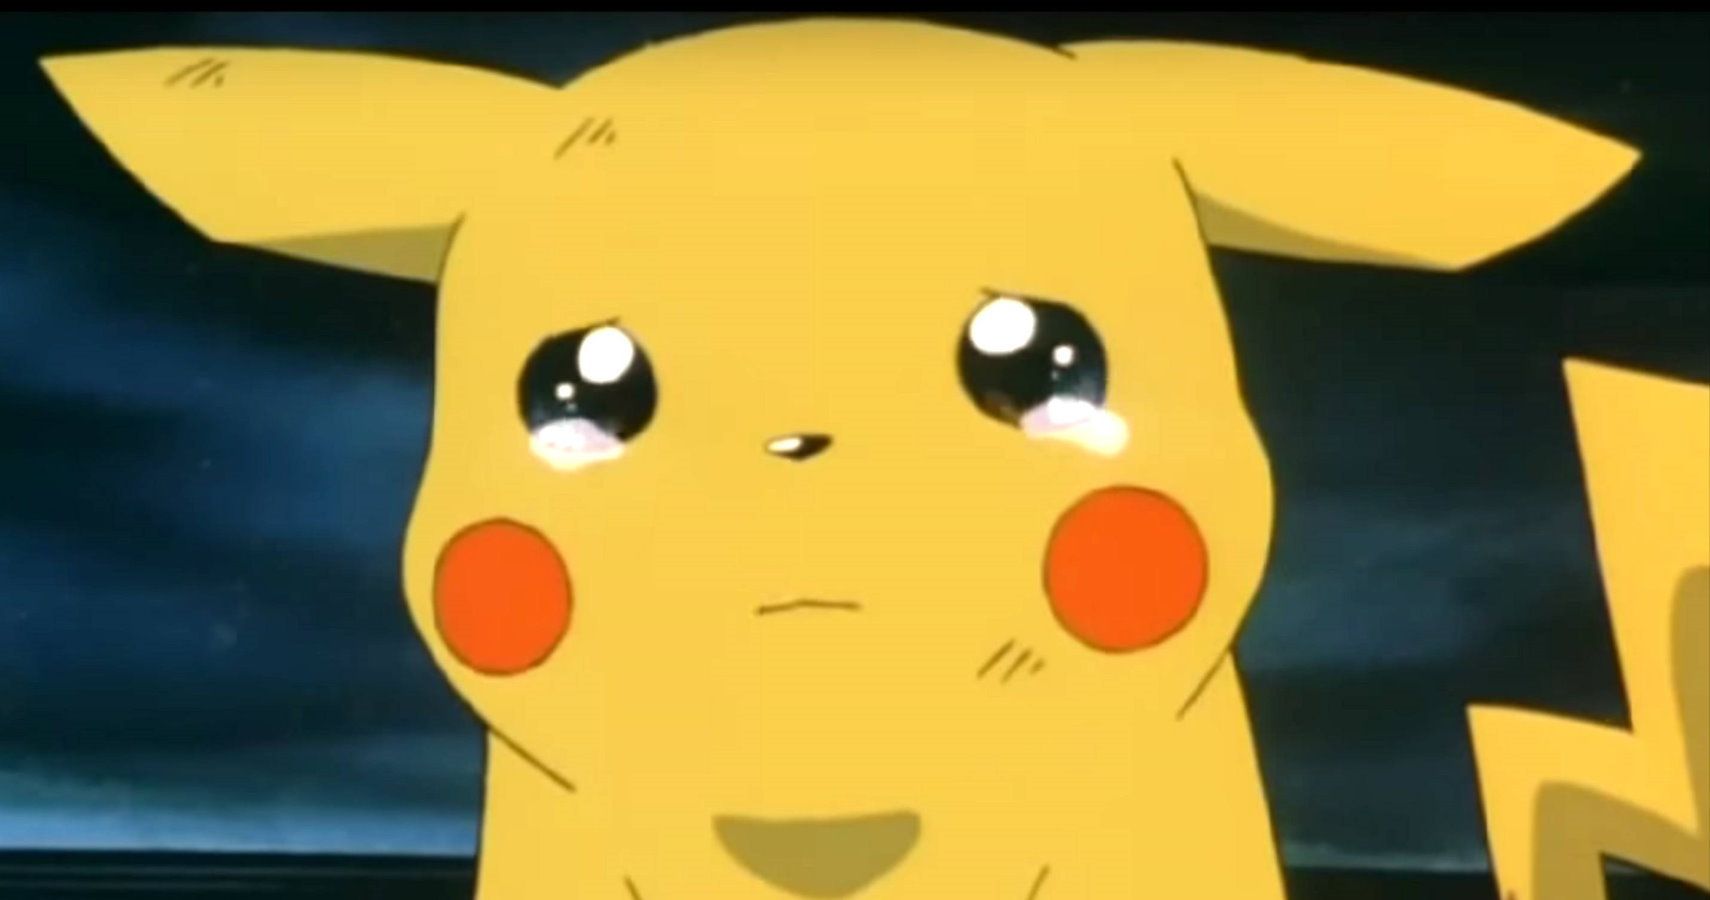 Crying Pikachu